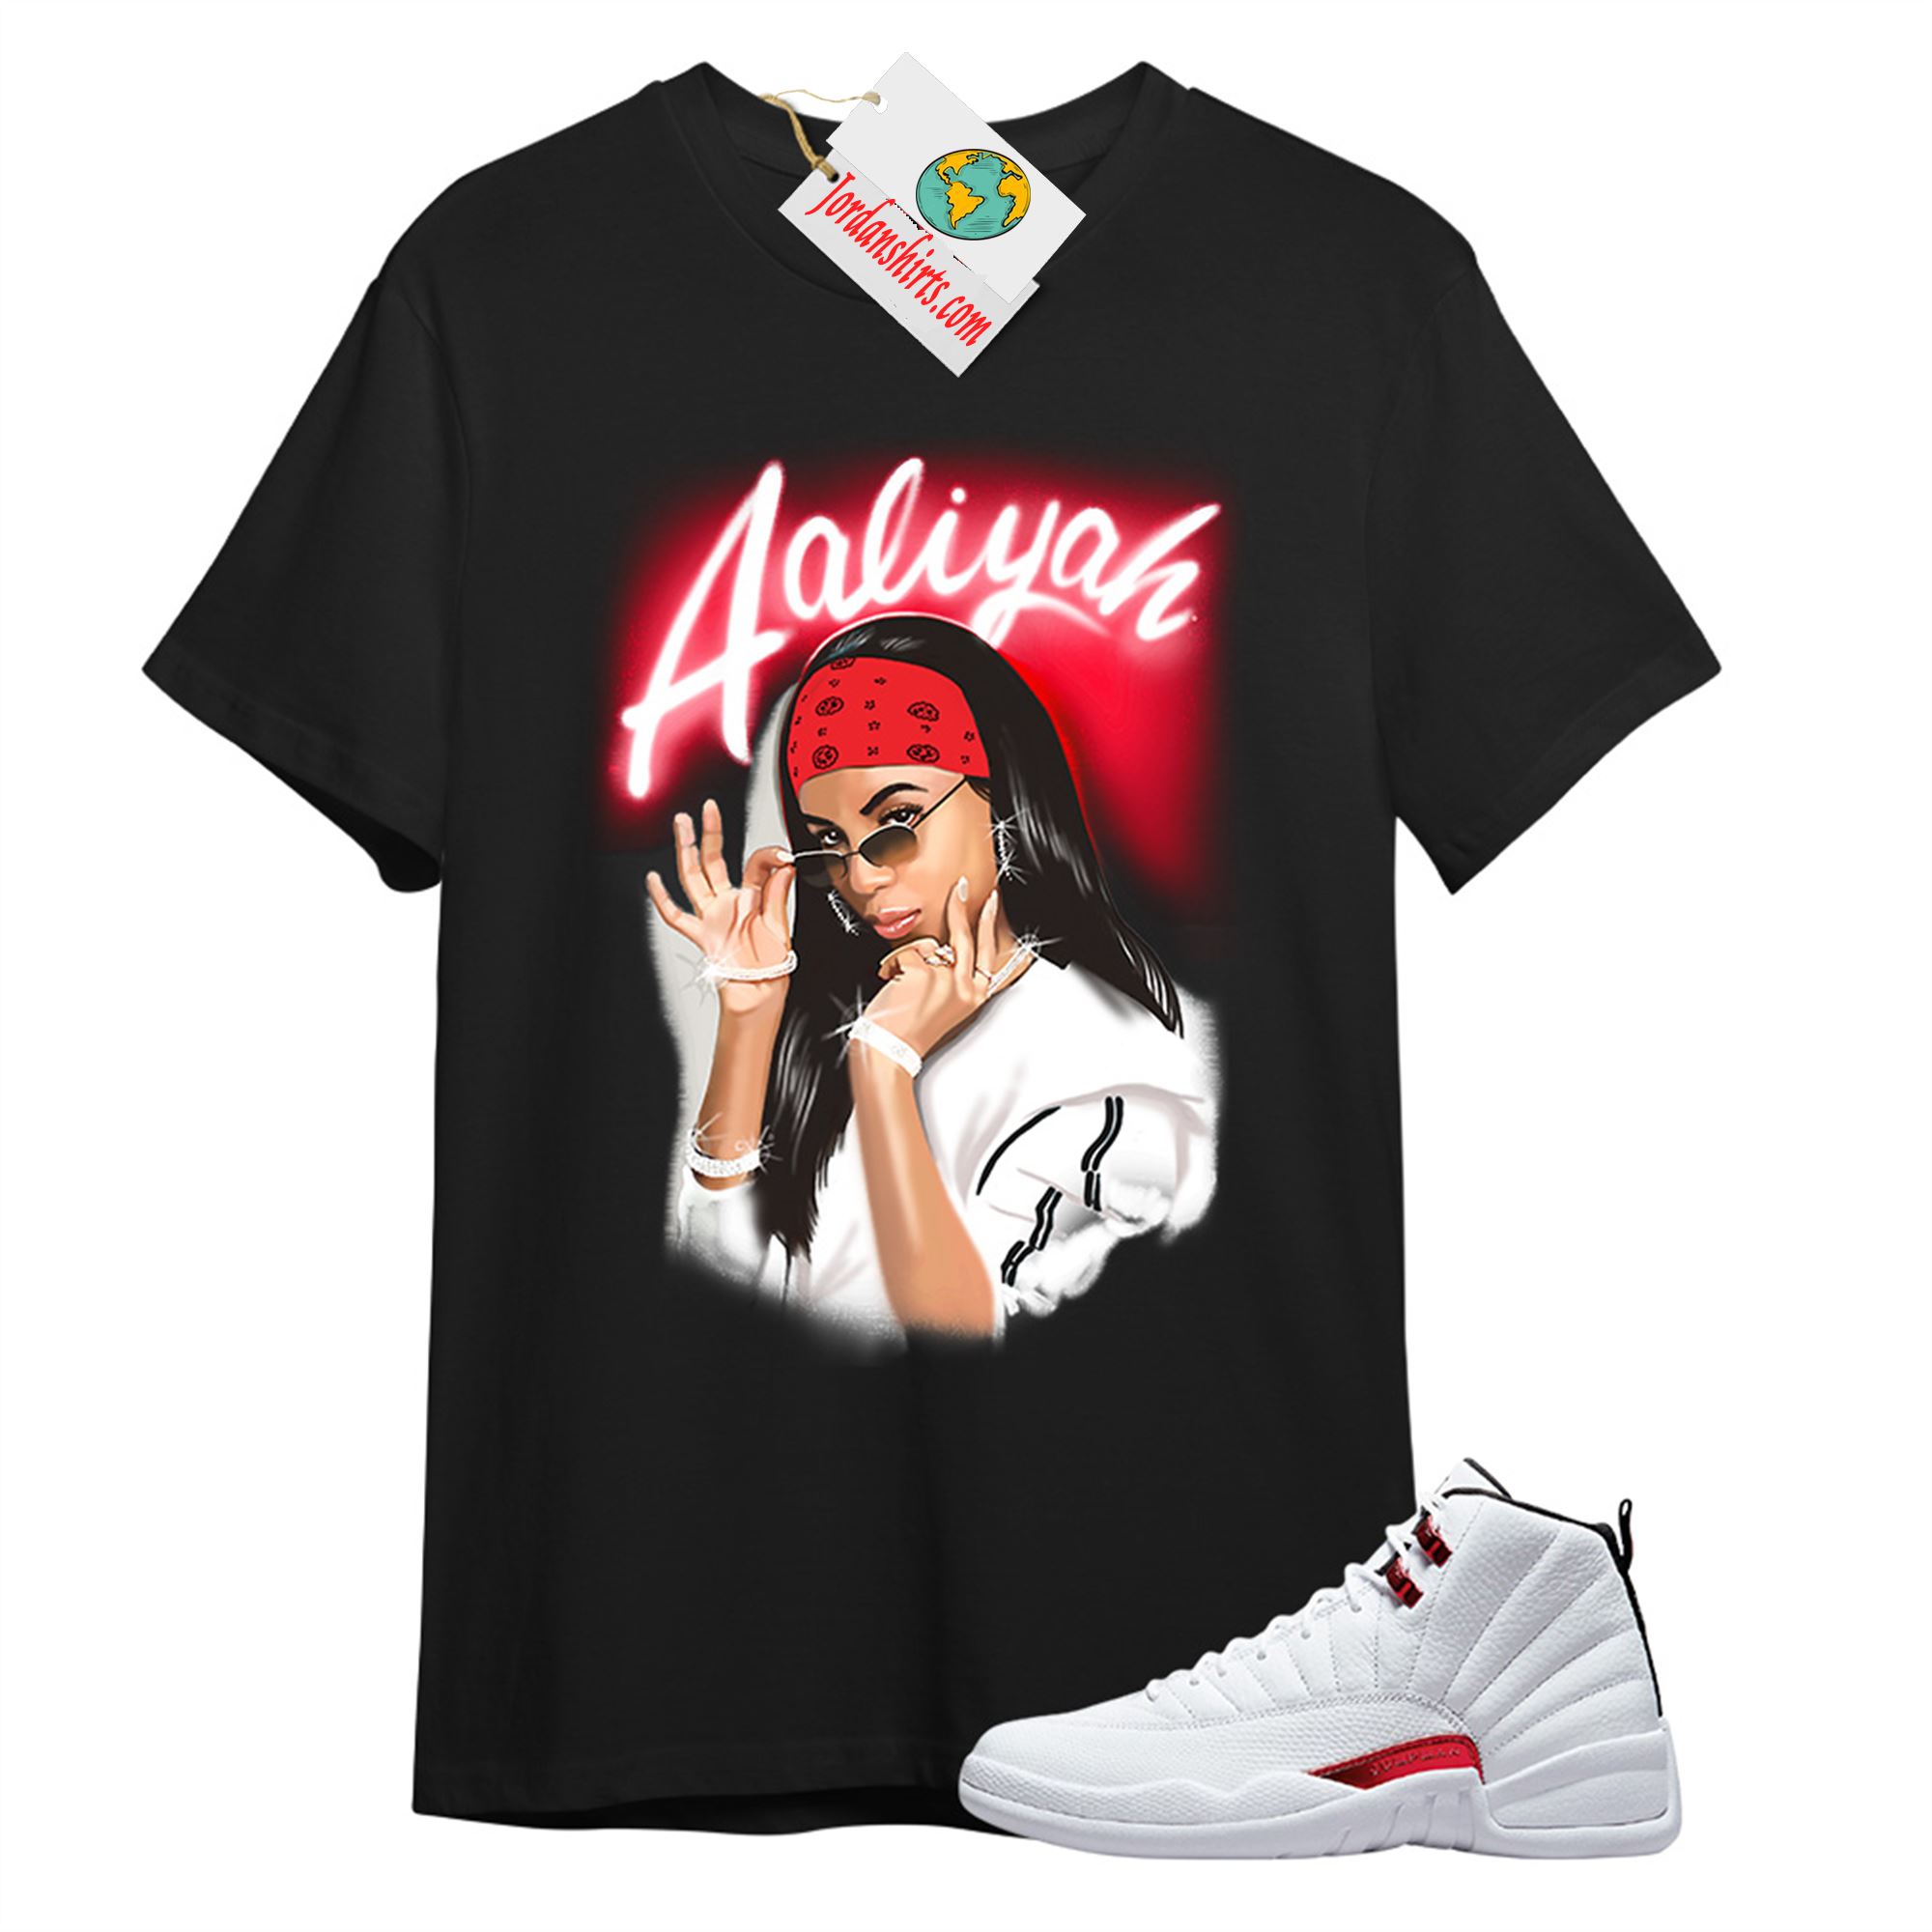 Jordan 12 Shirt, Aaliyah Airbrush Black T-shirt Air Jordan 12 Twist 12s Plus Size Up To 5xl